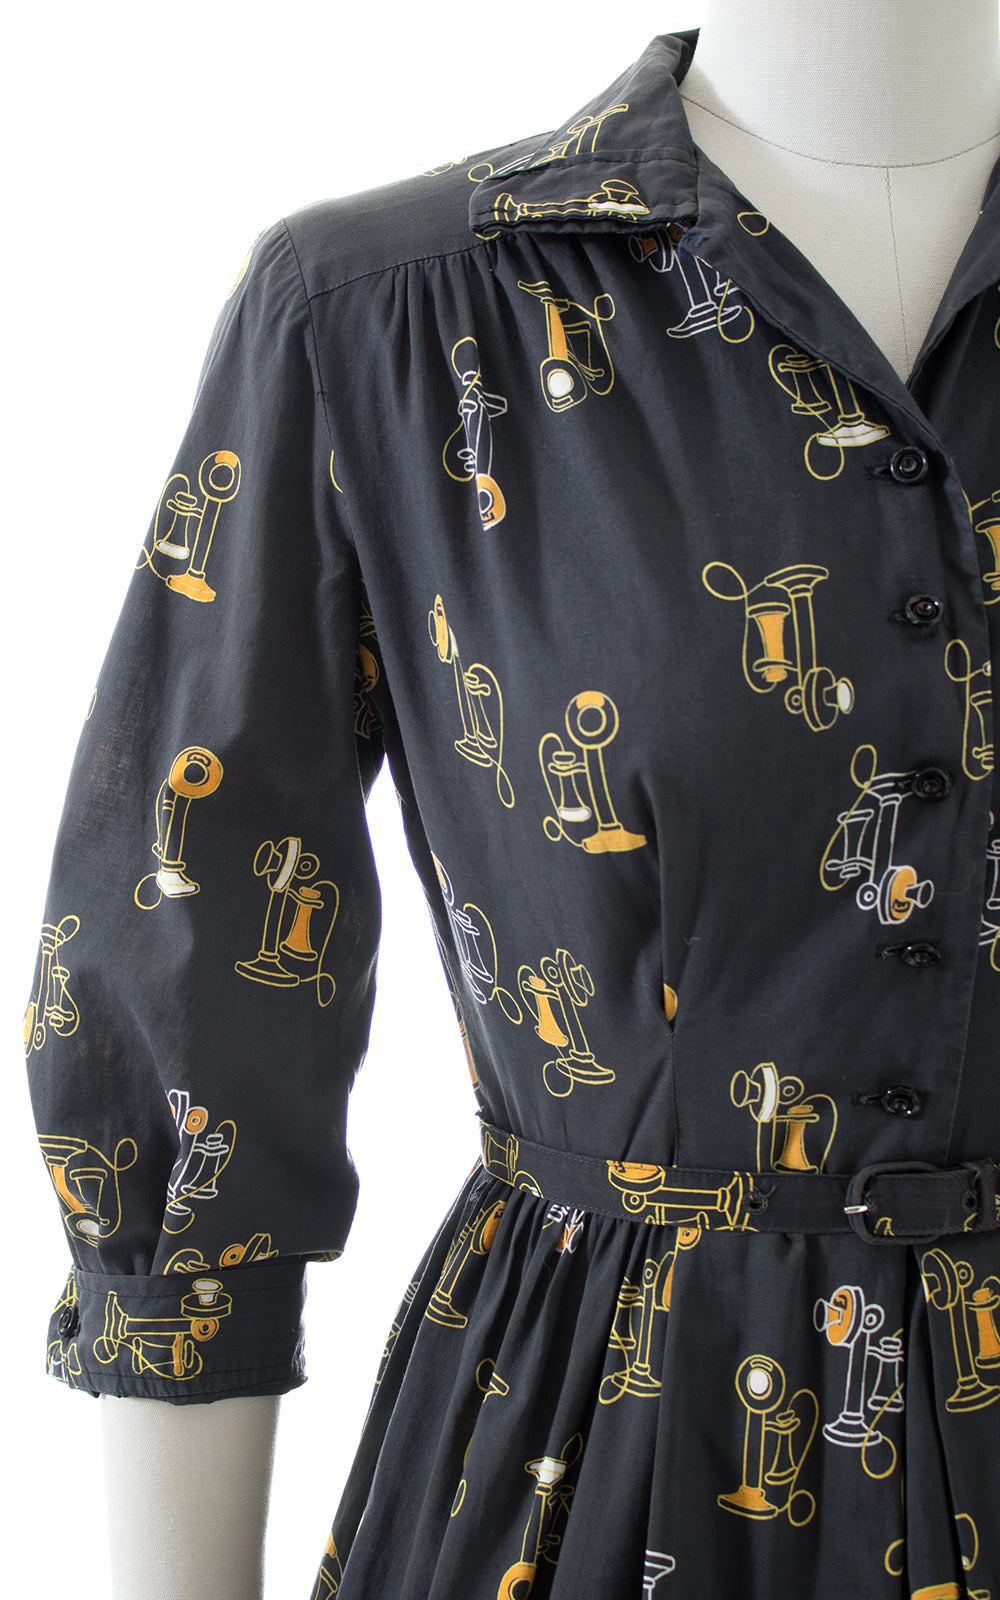 1950s Antique Phone Novelty Print Shirtwaist Dress | small/medium